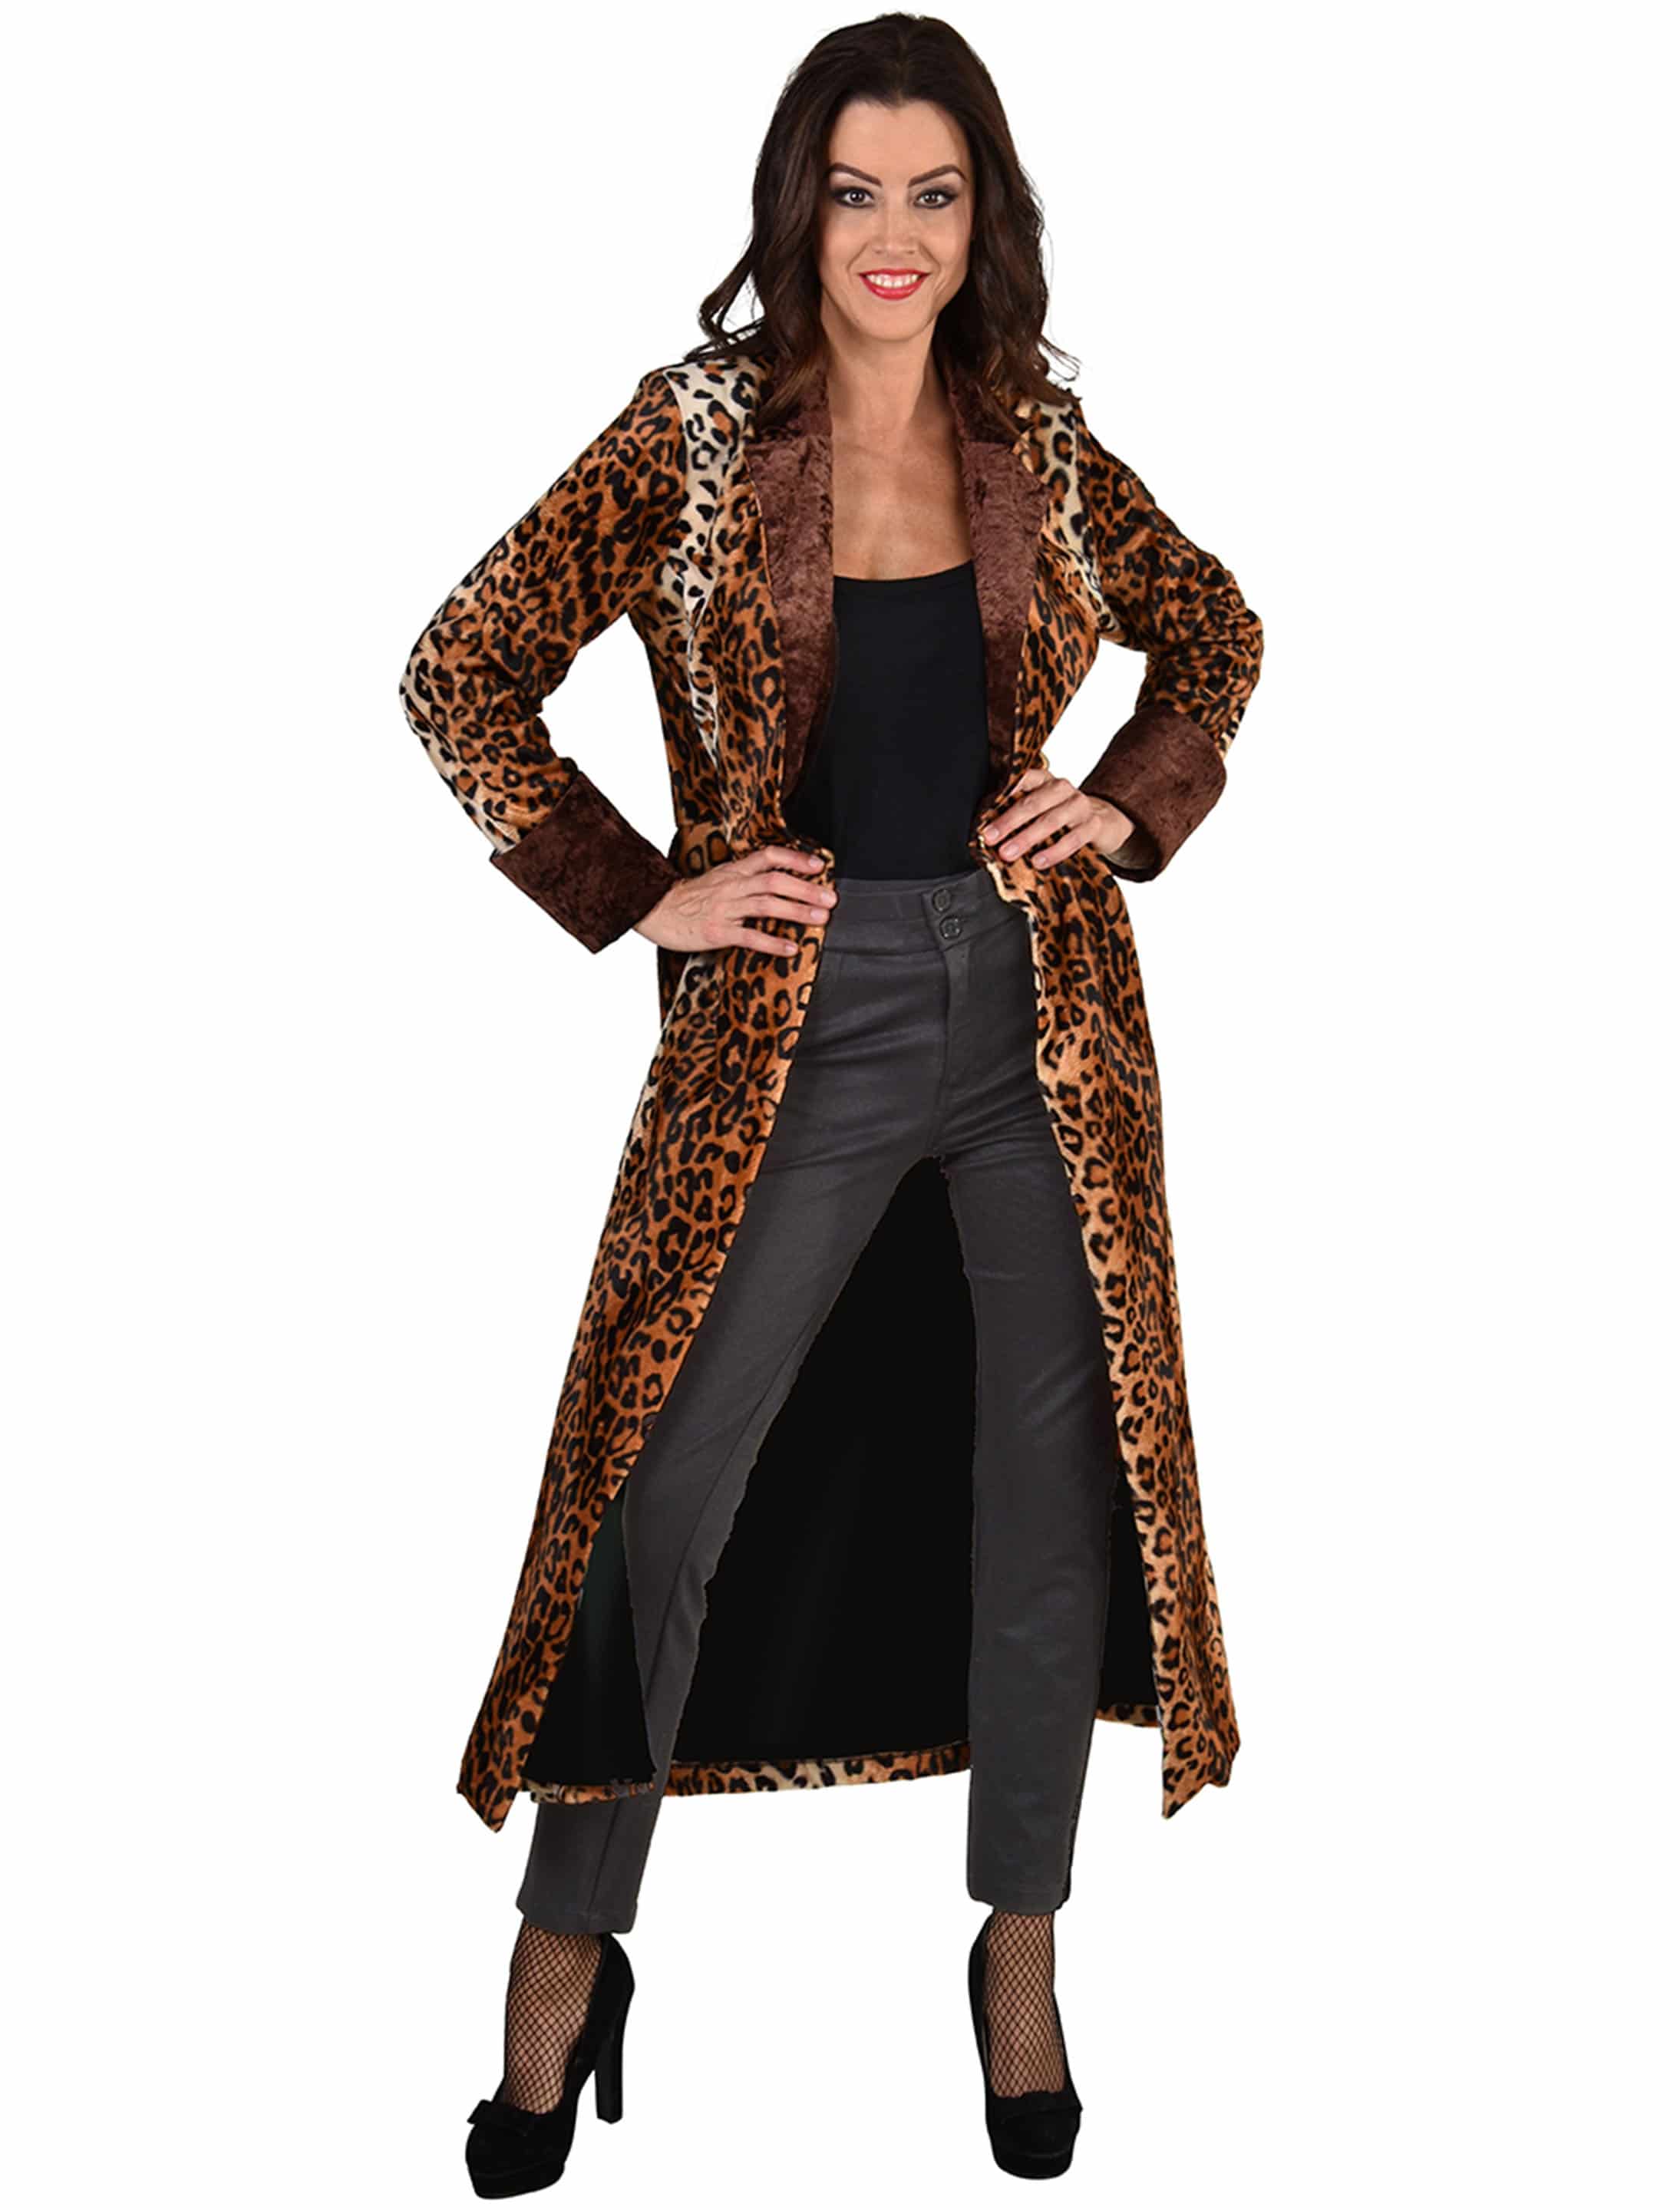 Mantel Leopard Damen schwarz/braun | | m224816-041-014 L/XL | L/XL schwarz/braun